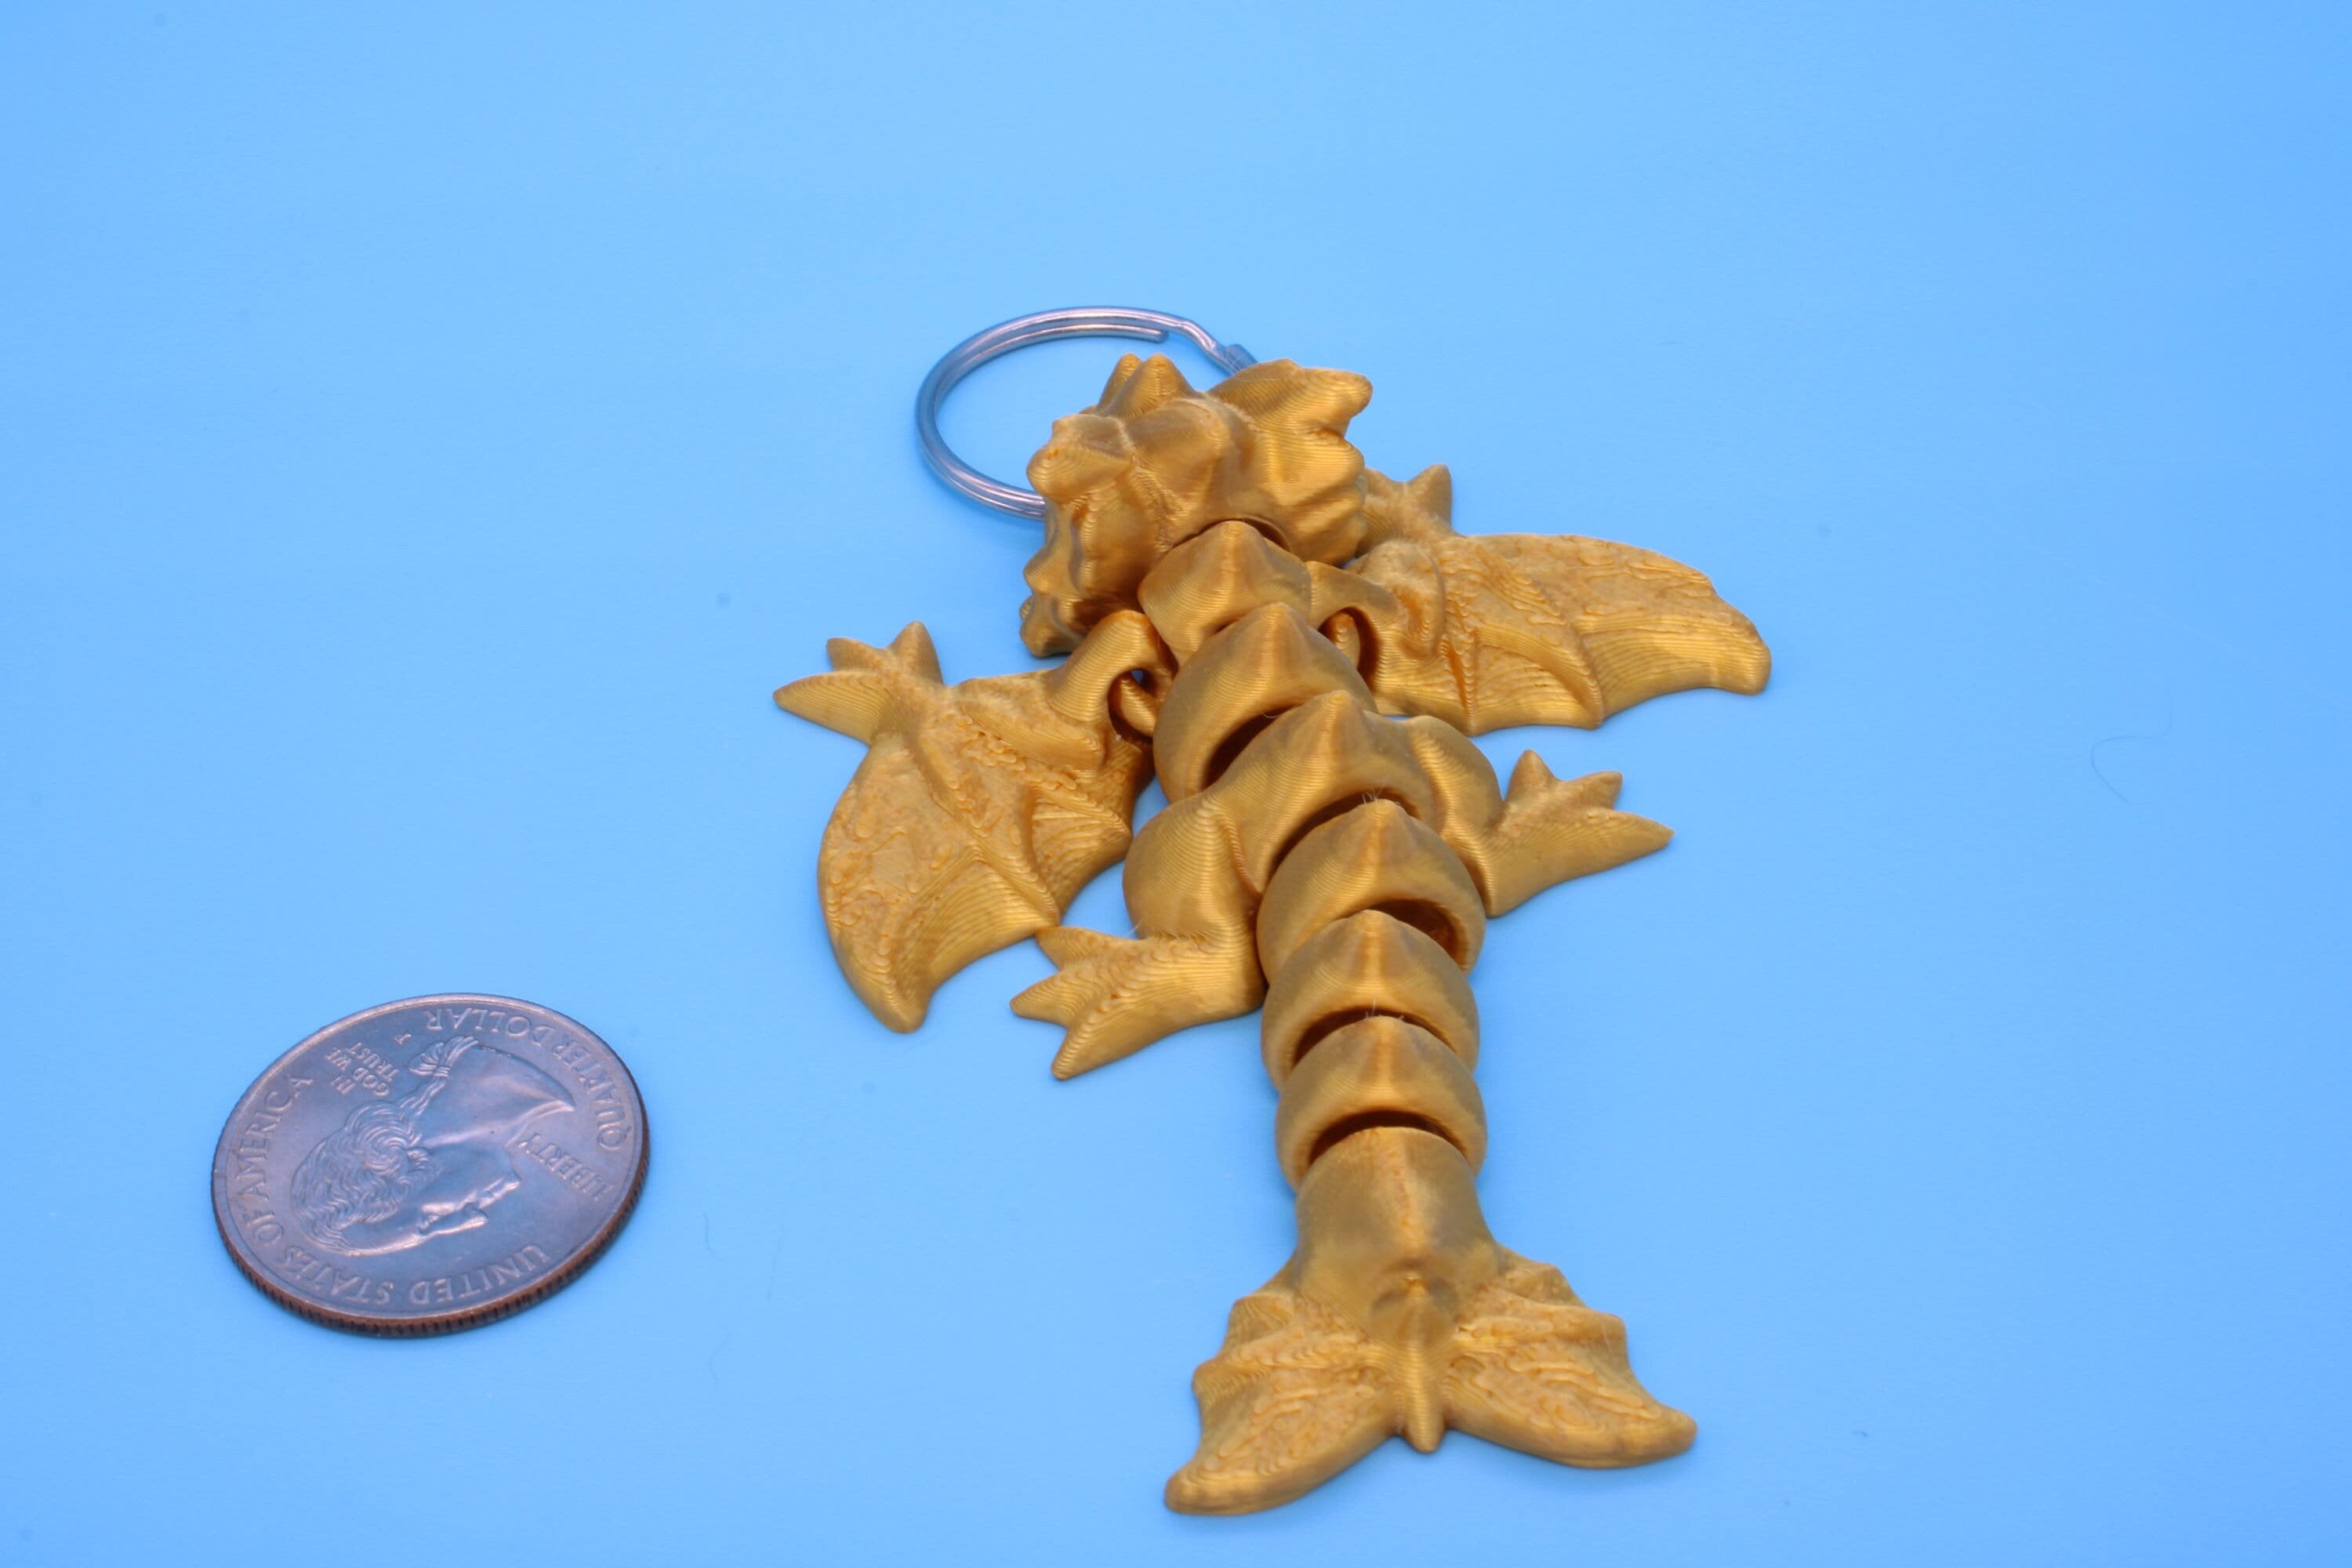 Baby Wyvern Dragon Keychain | 3D Printed Wyvern Dragon | 4 inches Dragon Friend | Sensory Toy | Fidget Toy | Flexi Dragon.